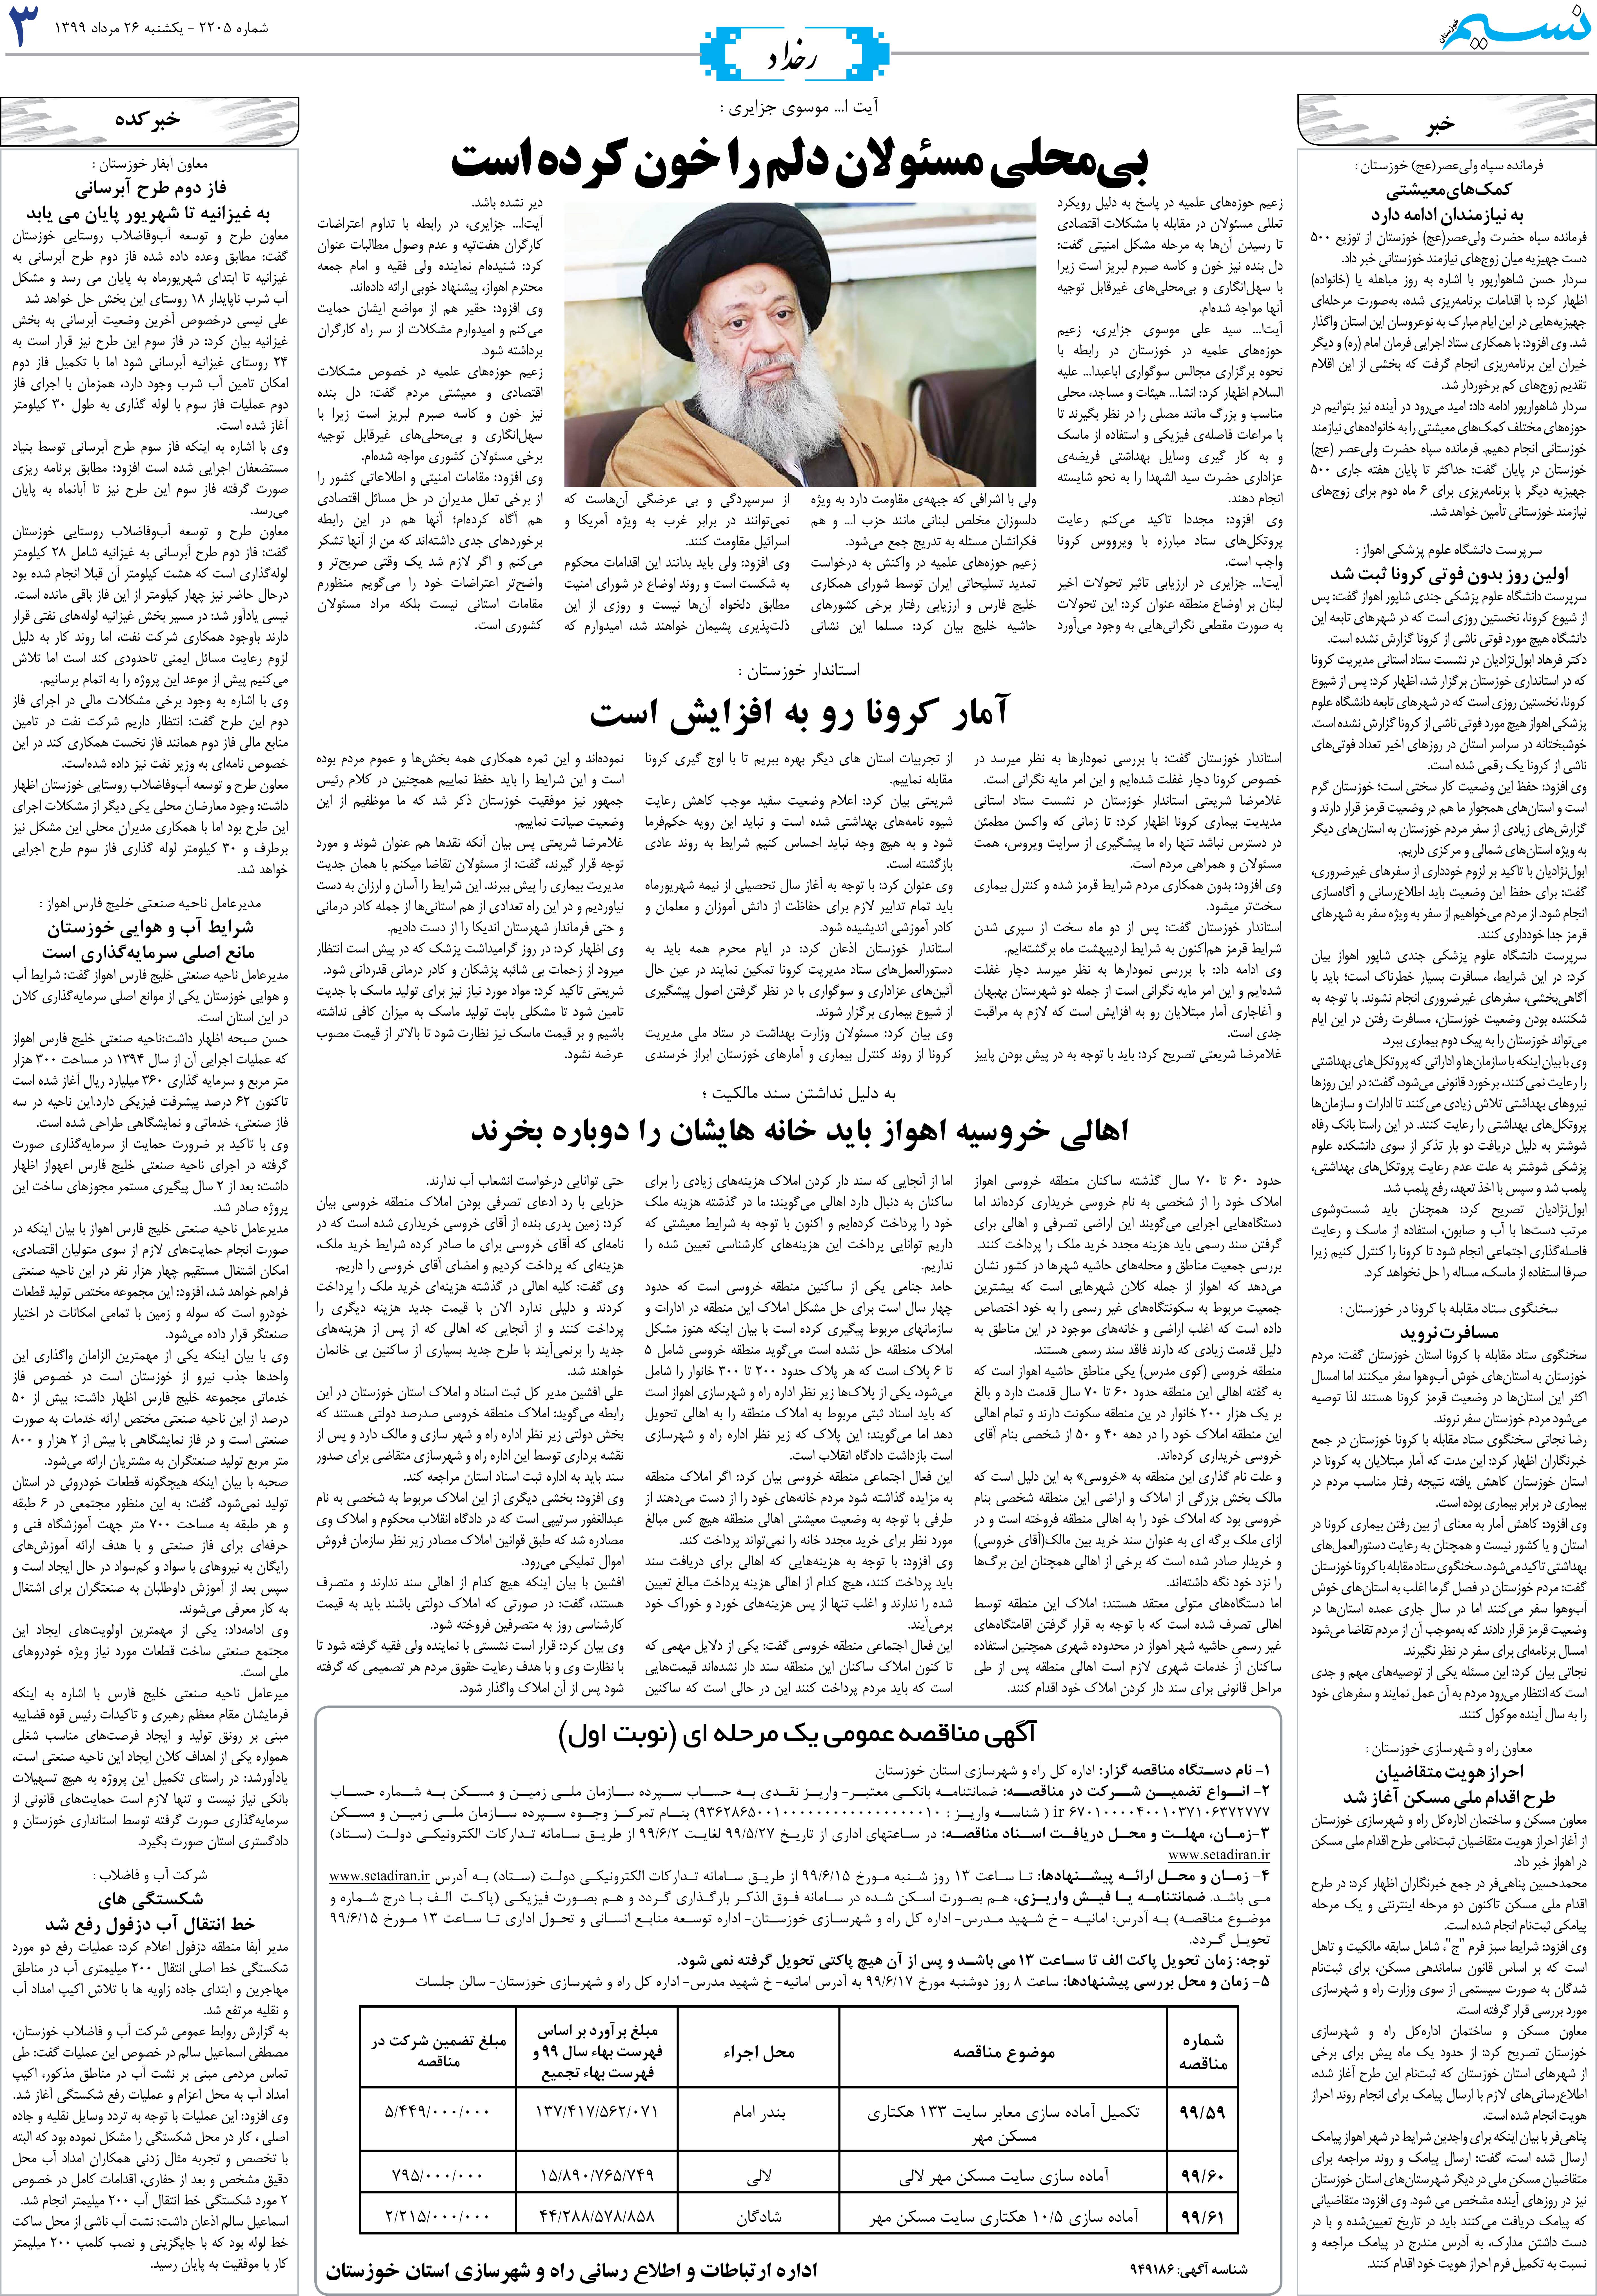 صفحه رخداد روزنامه نسیم شماره 2205